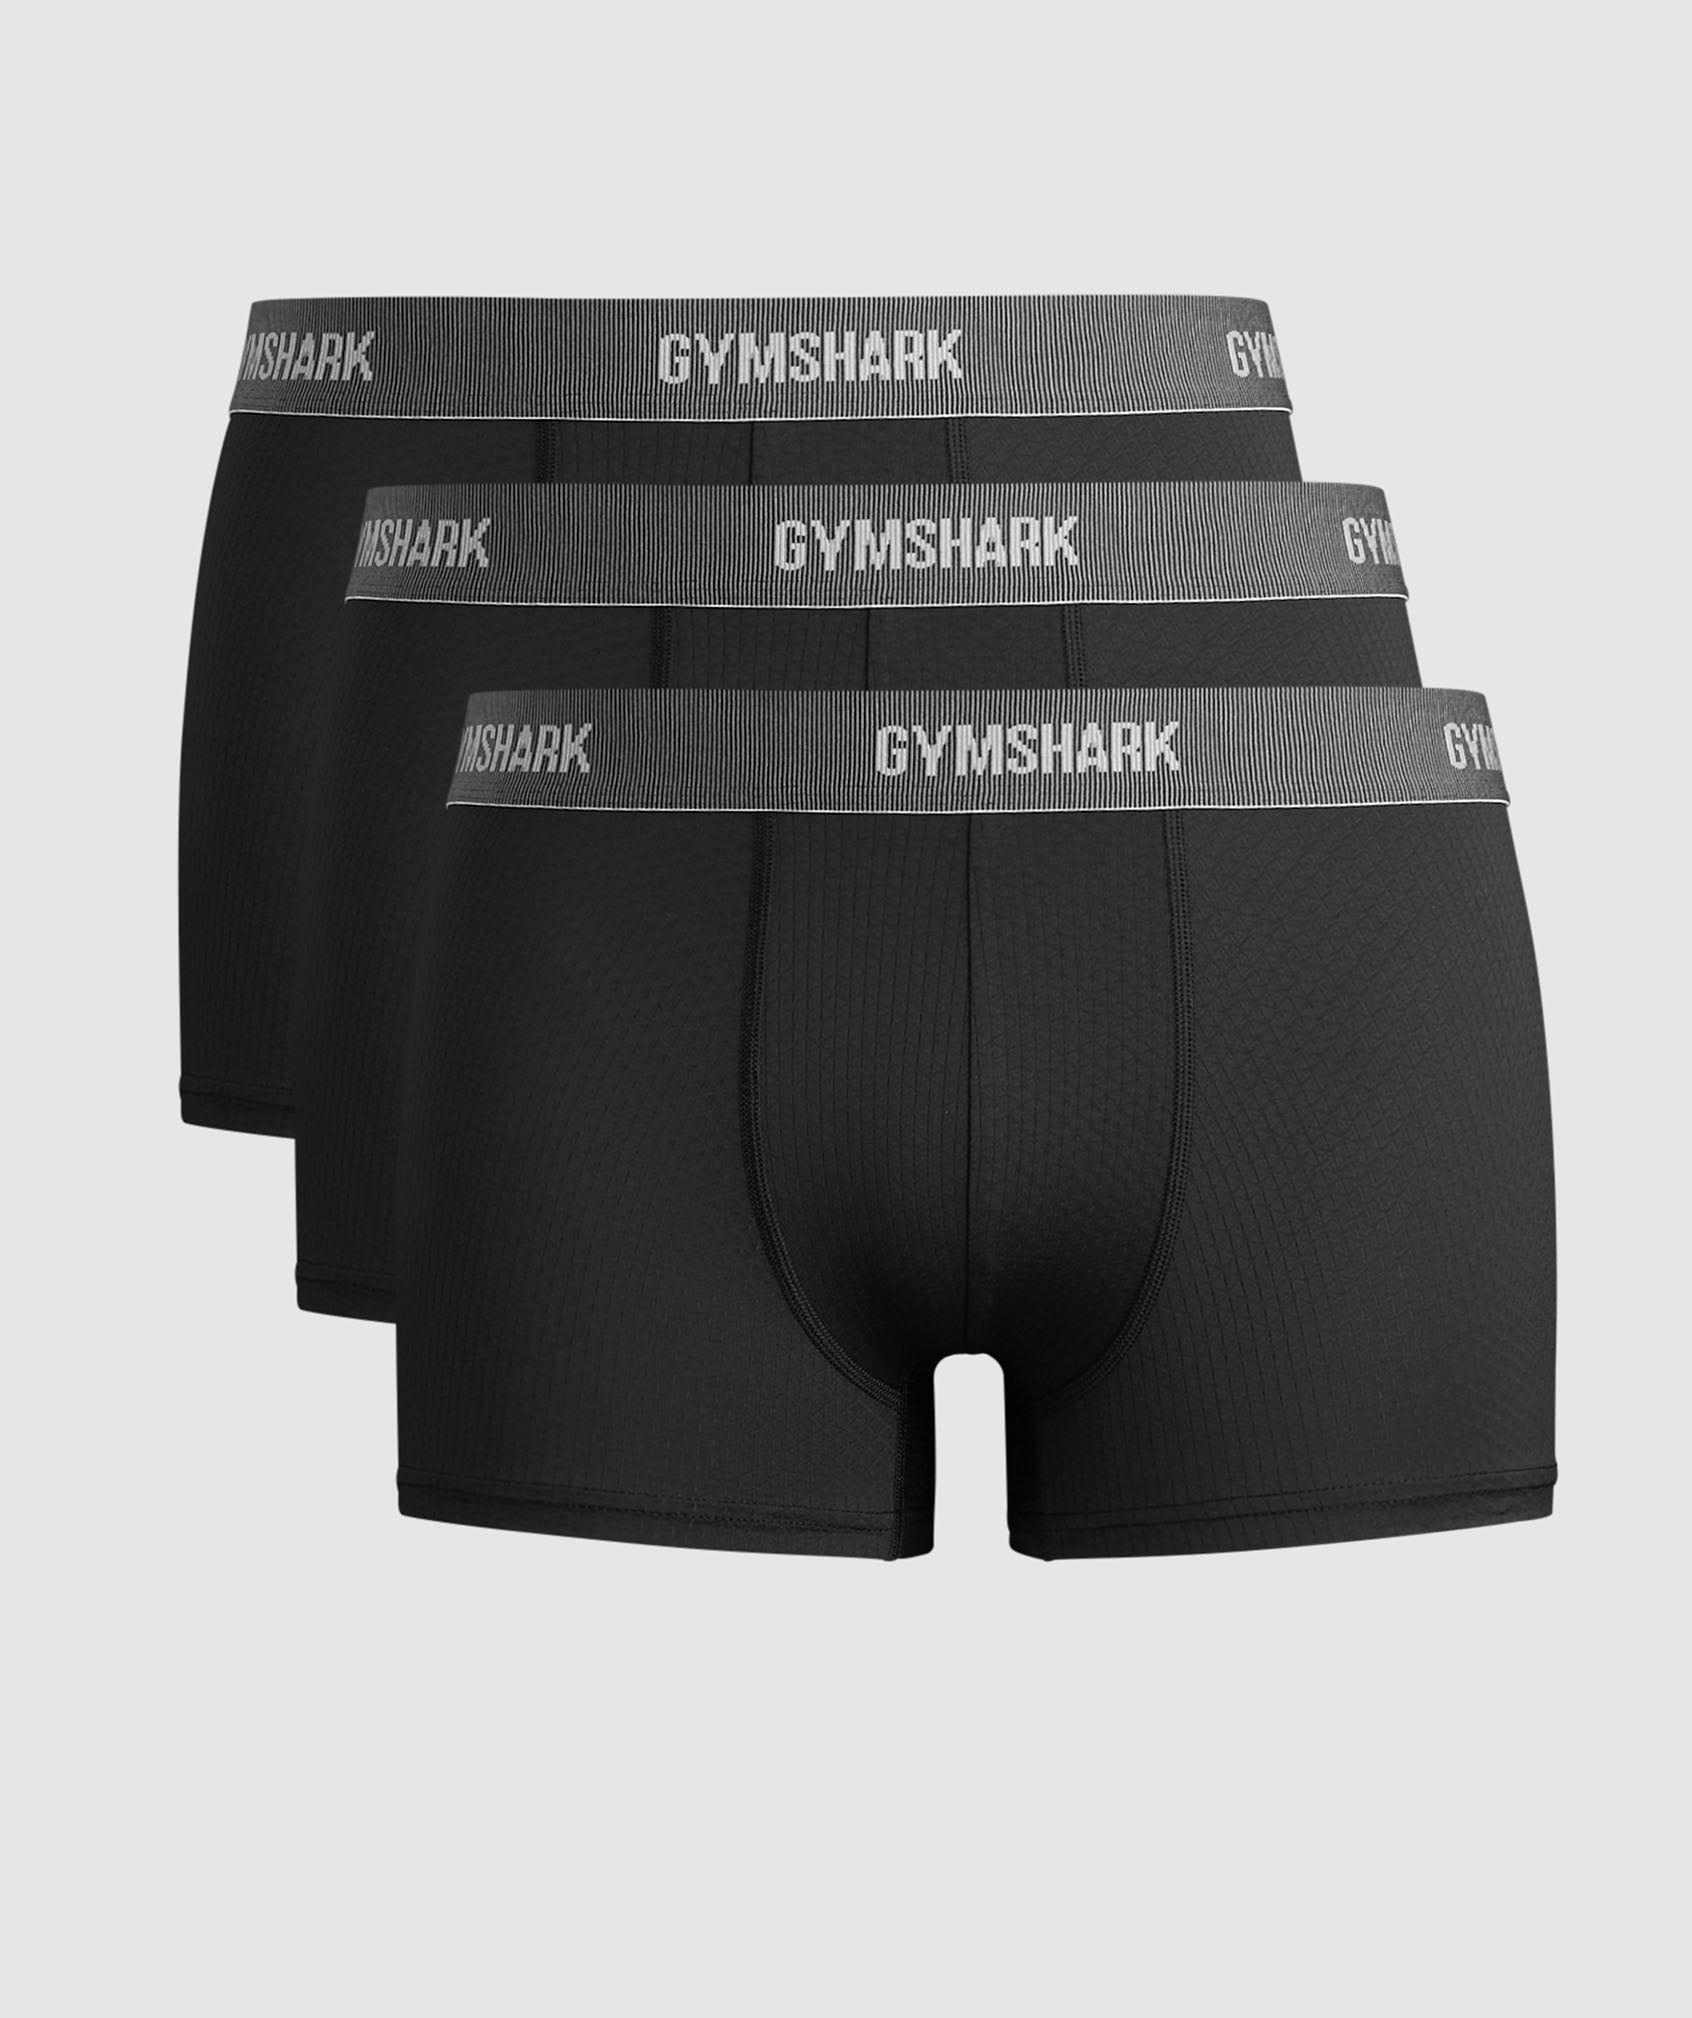 Gymshark Sports Tech Boxers 2Pk - Black